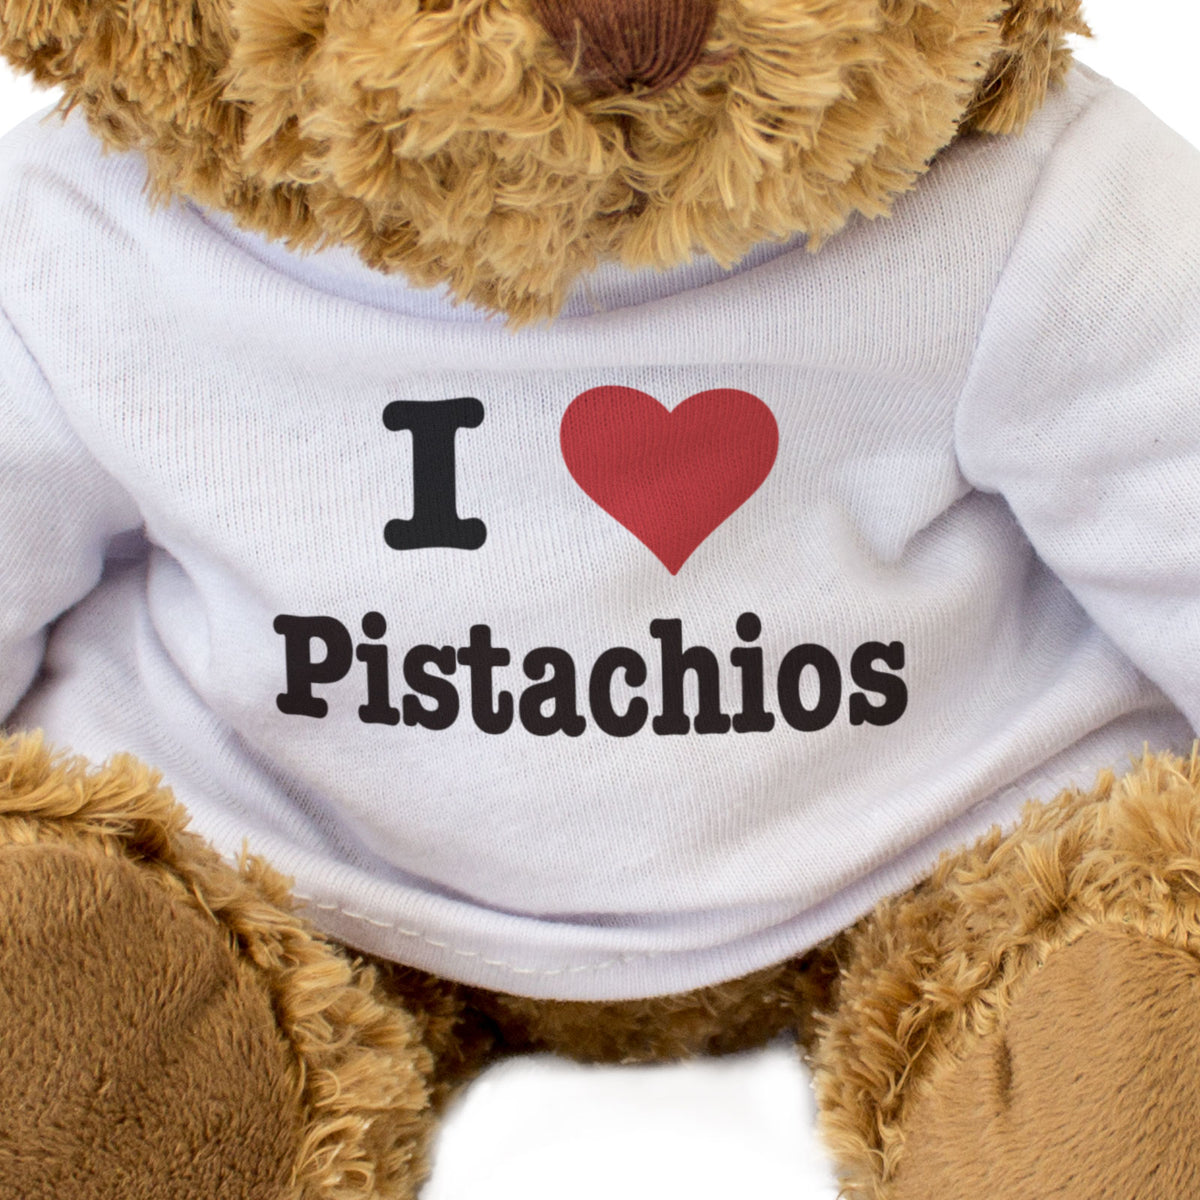 I Love Pistachios - Teddy Bear